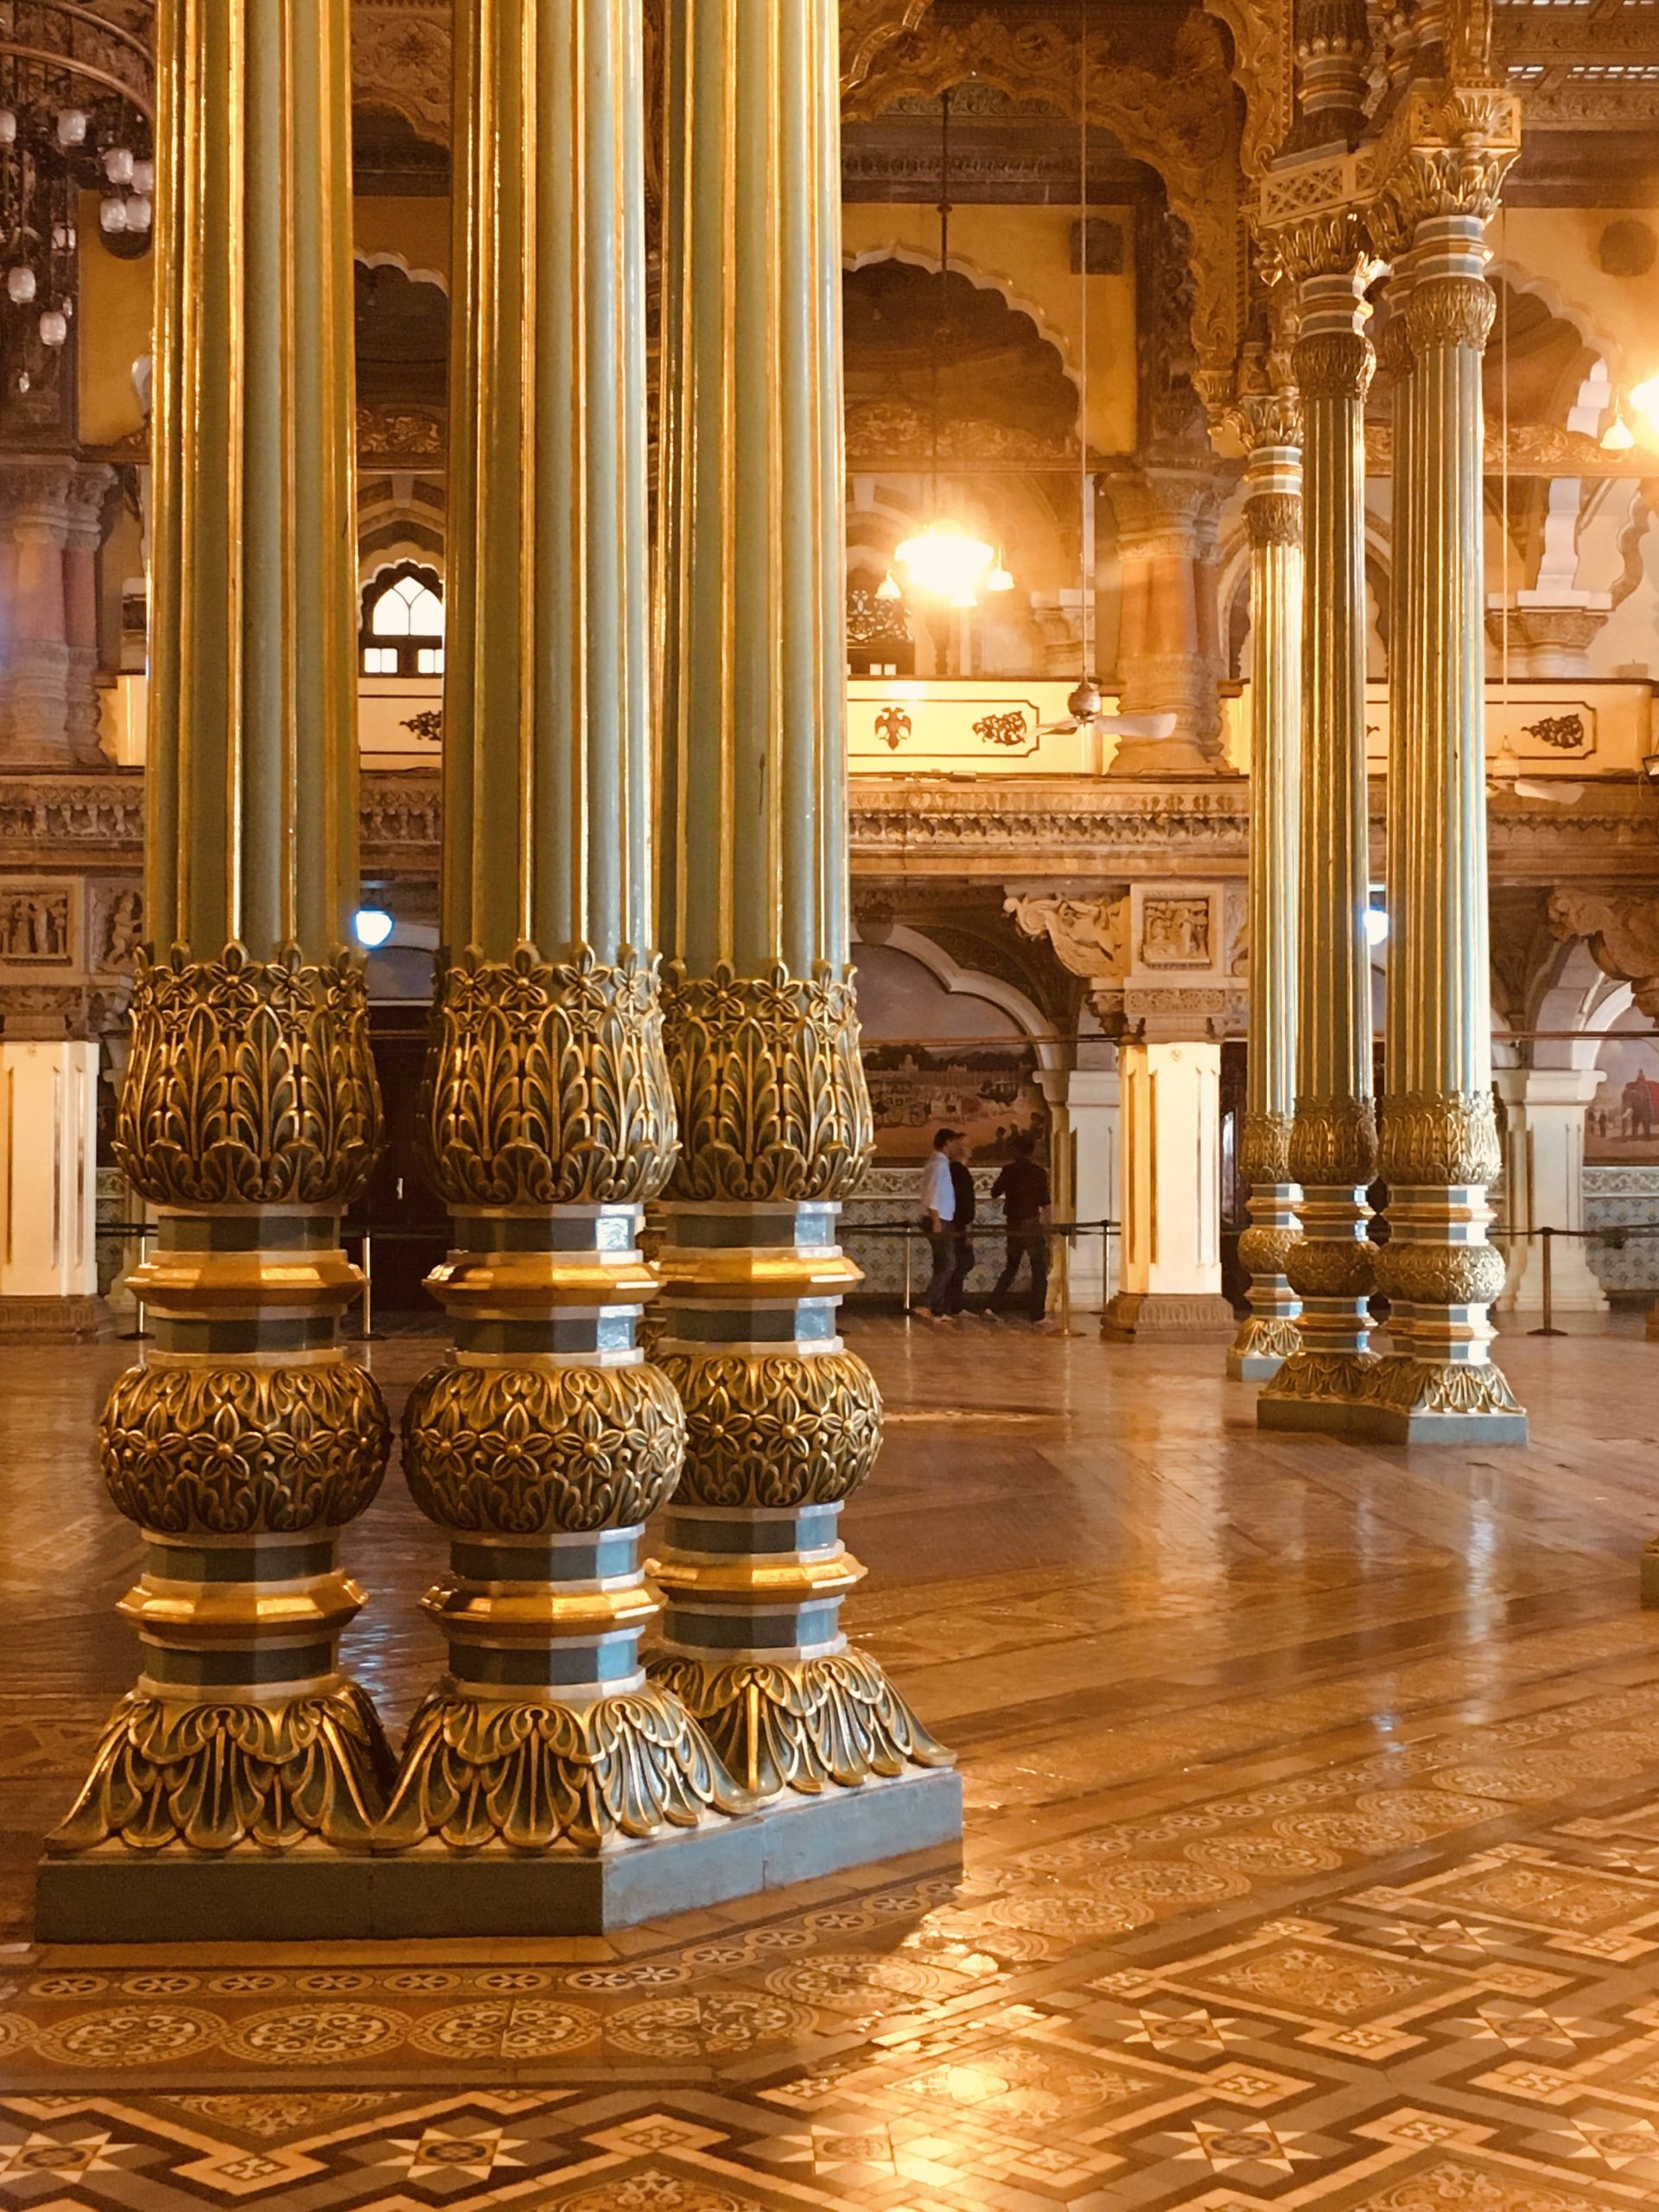 Beautiful Mysore palace